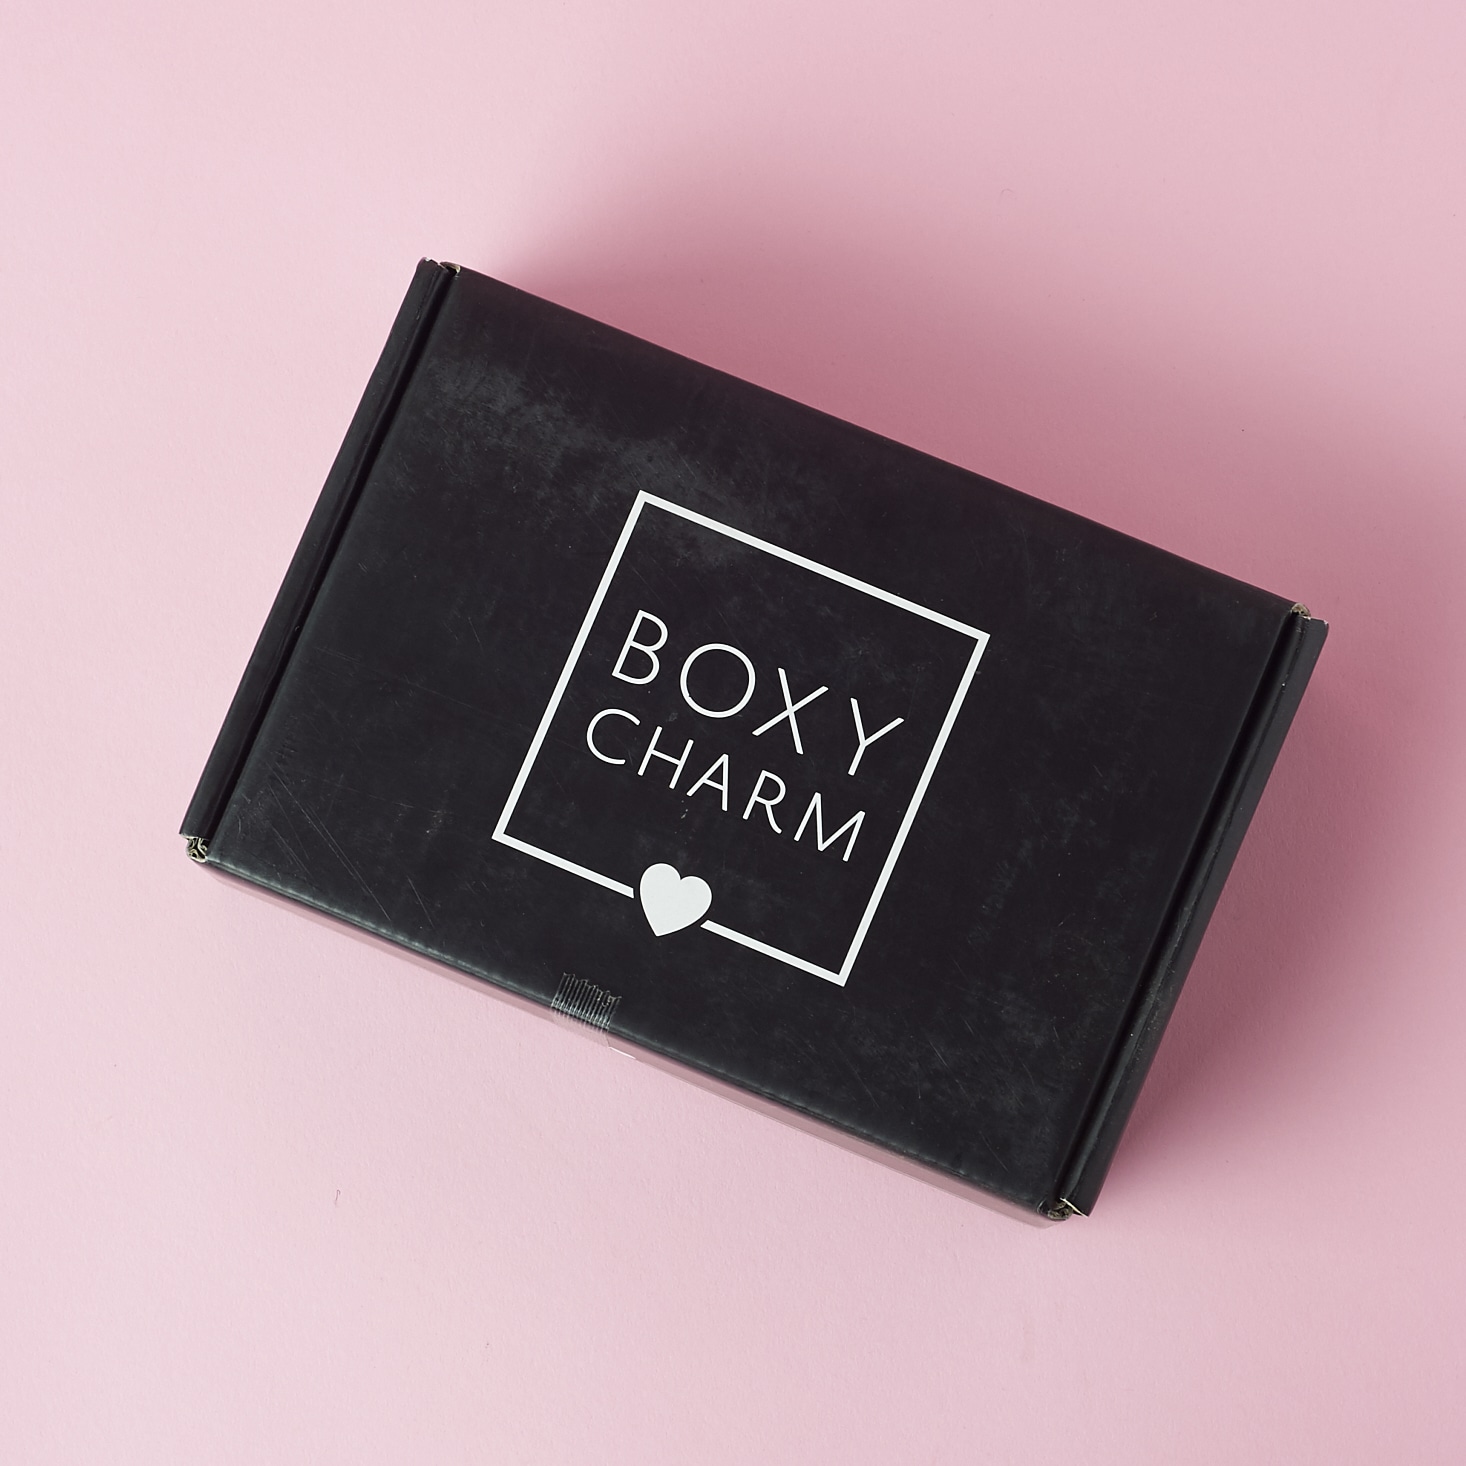 Boxycharm Beauty Subscription Box Aug 2017